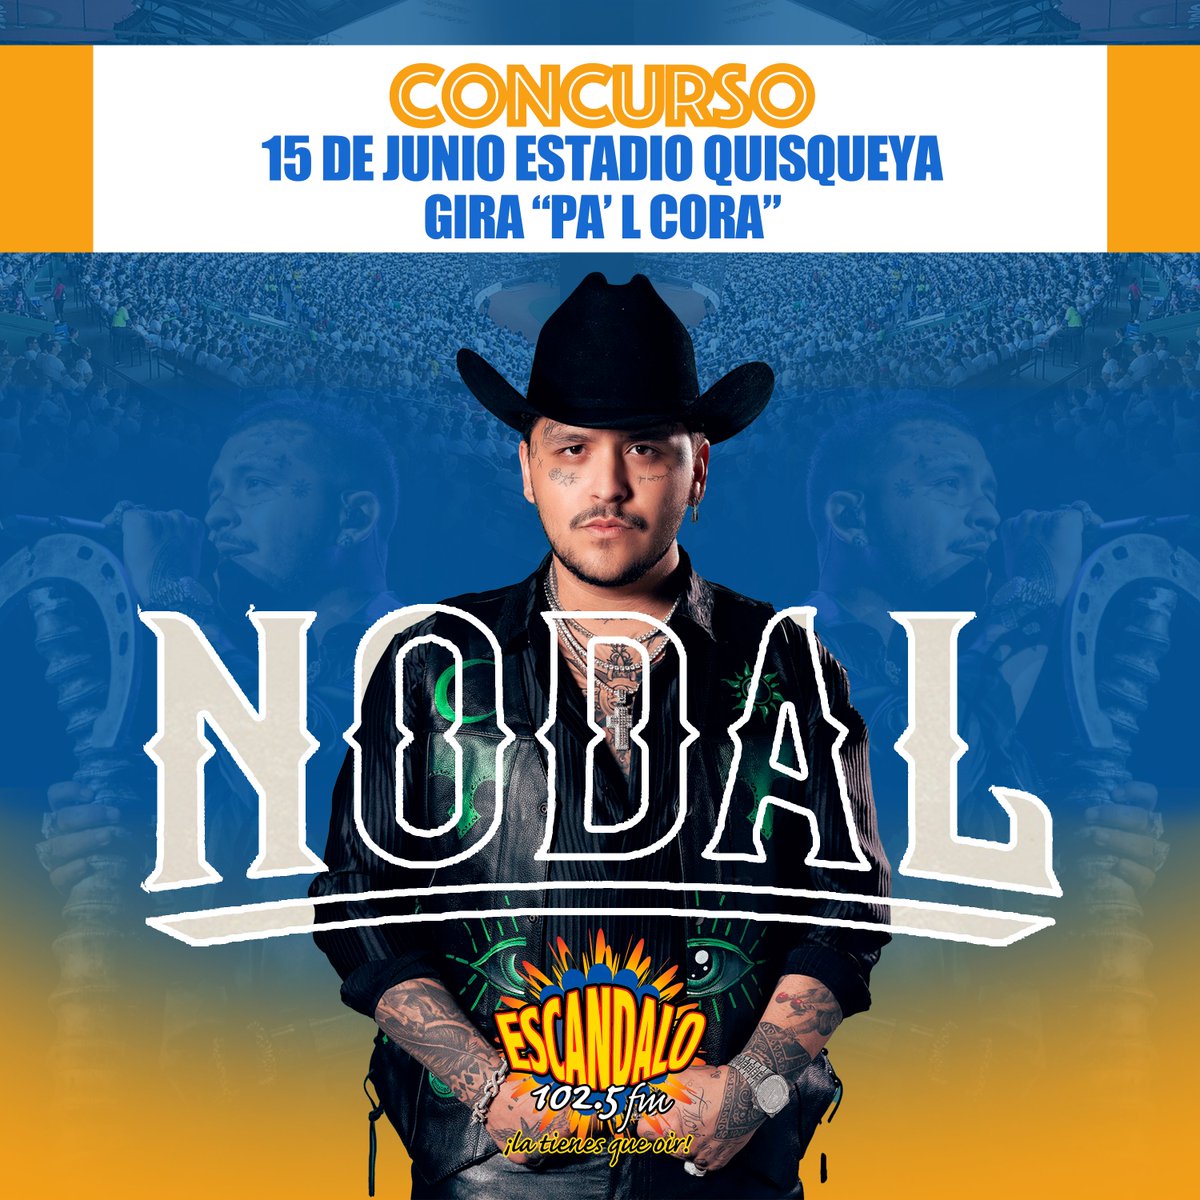 #Escandalo te lleva a escuchar buena música mexicana y disfrutar de @nodal el 15 de junio en concierto en el estadio Quisqueya. instagram.com/p/C7R5jVPP1mN/